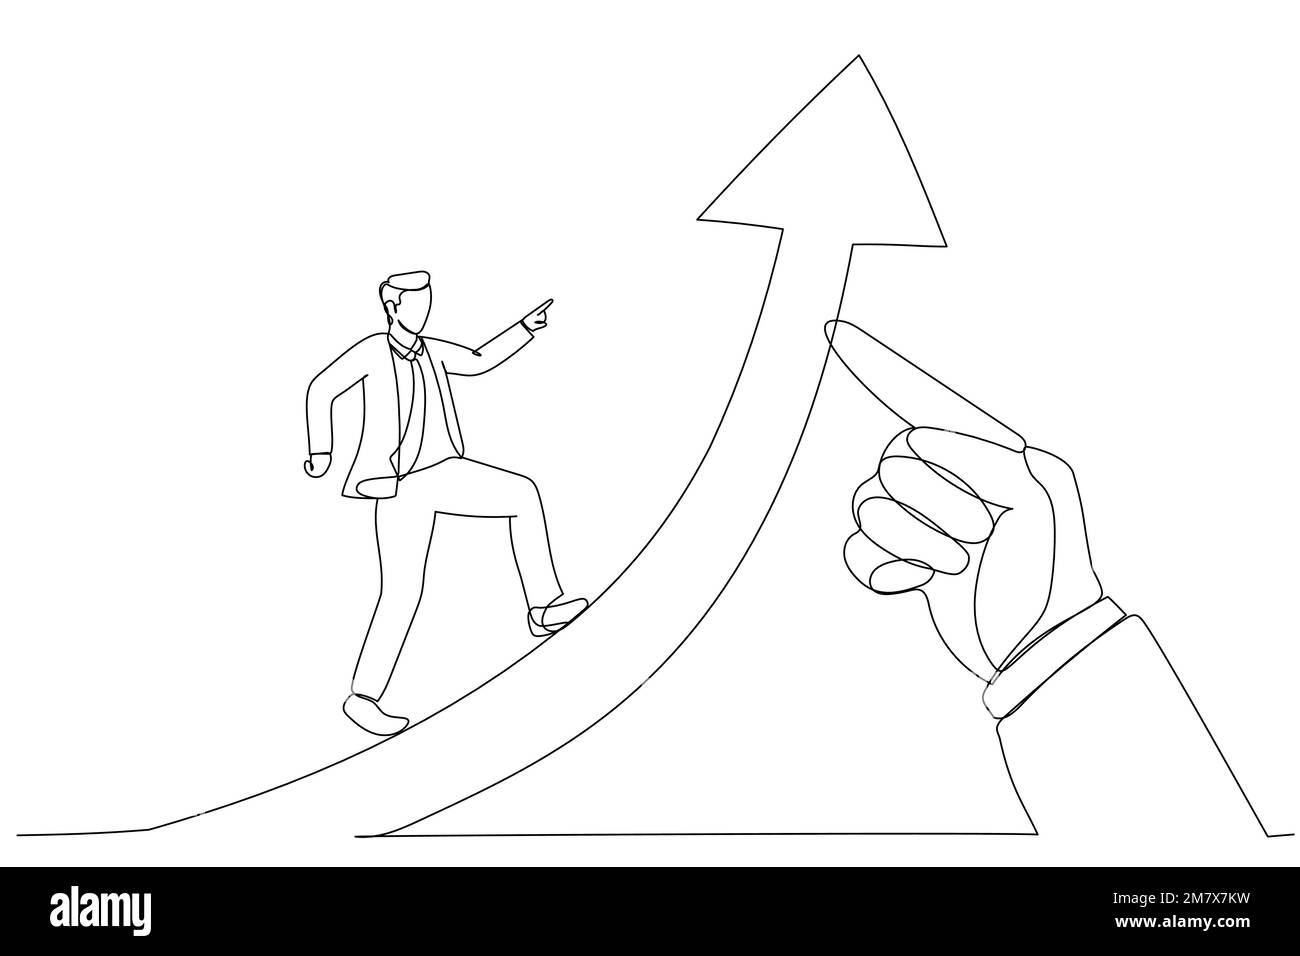 Cartoon eines Geschäftsmannes, der auf einem Erfolgspfeil läuft, aufgezogen von einer riesigen Hand des Anführers. Metapher für den Geschäftserfolg, der die Führung vorantreibt. Einzelner Anschluss Stock Vektor